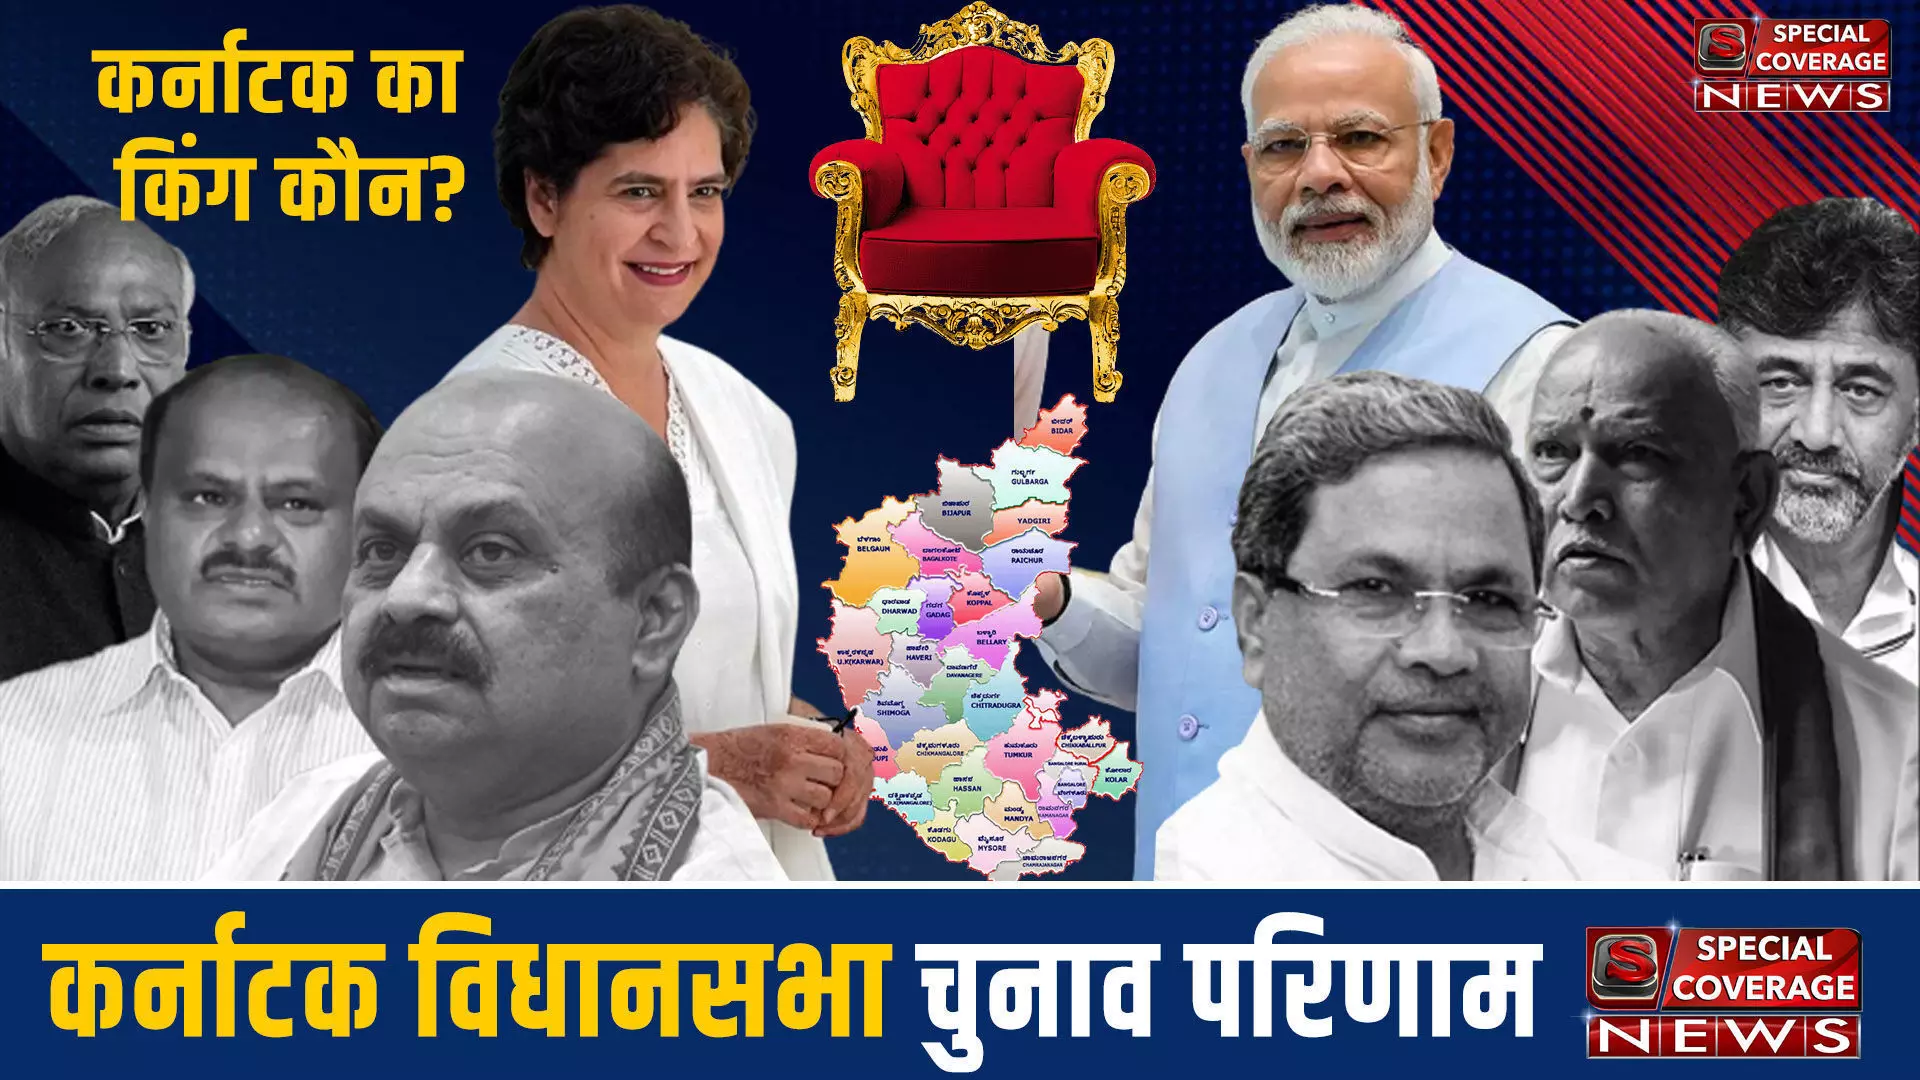 Karnataka Assembly Election 2023: कर्नाटक के दक्षिण कन्नड़ जिले की विधानसभा सीट के चुनाव परिणाम 2023